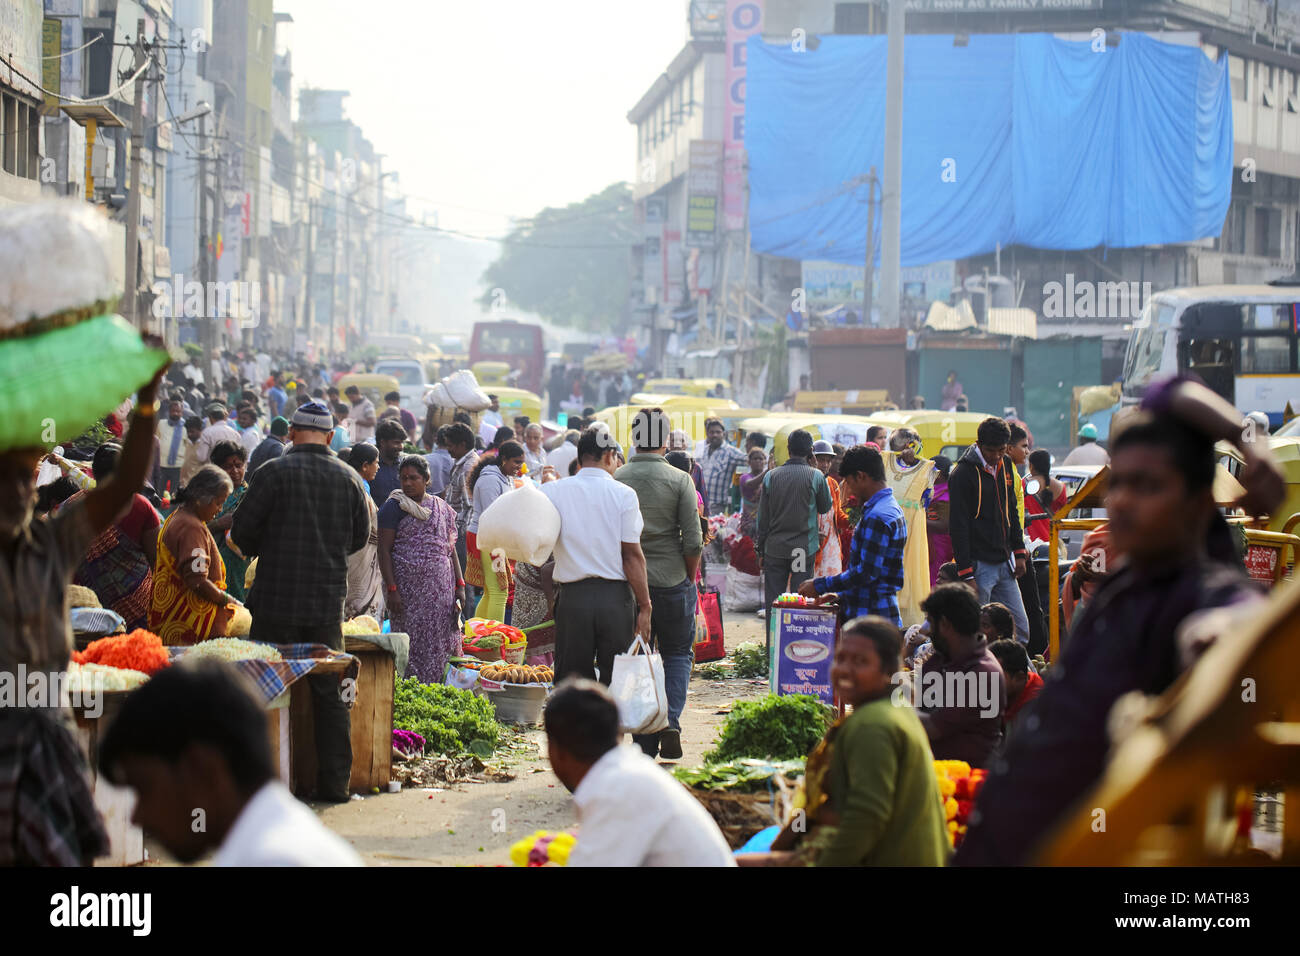 Bangalore, India - 23 Ottobre 2016: vista del mercato KR nelle ore del mattino, la folla si impegna in shopping per le loro esigenze quotidiane da venditori ambulanti. Foto Stock